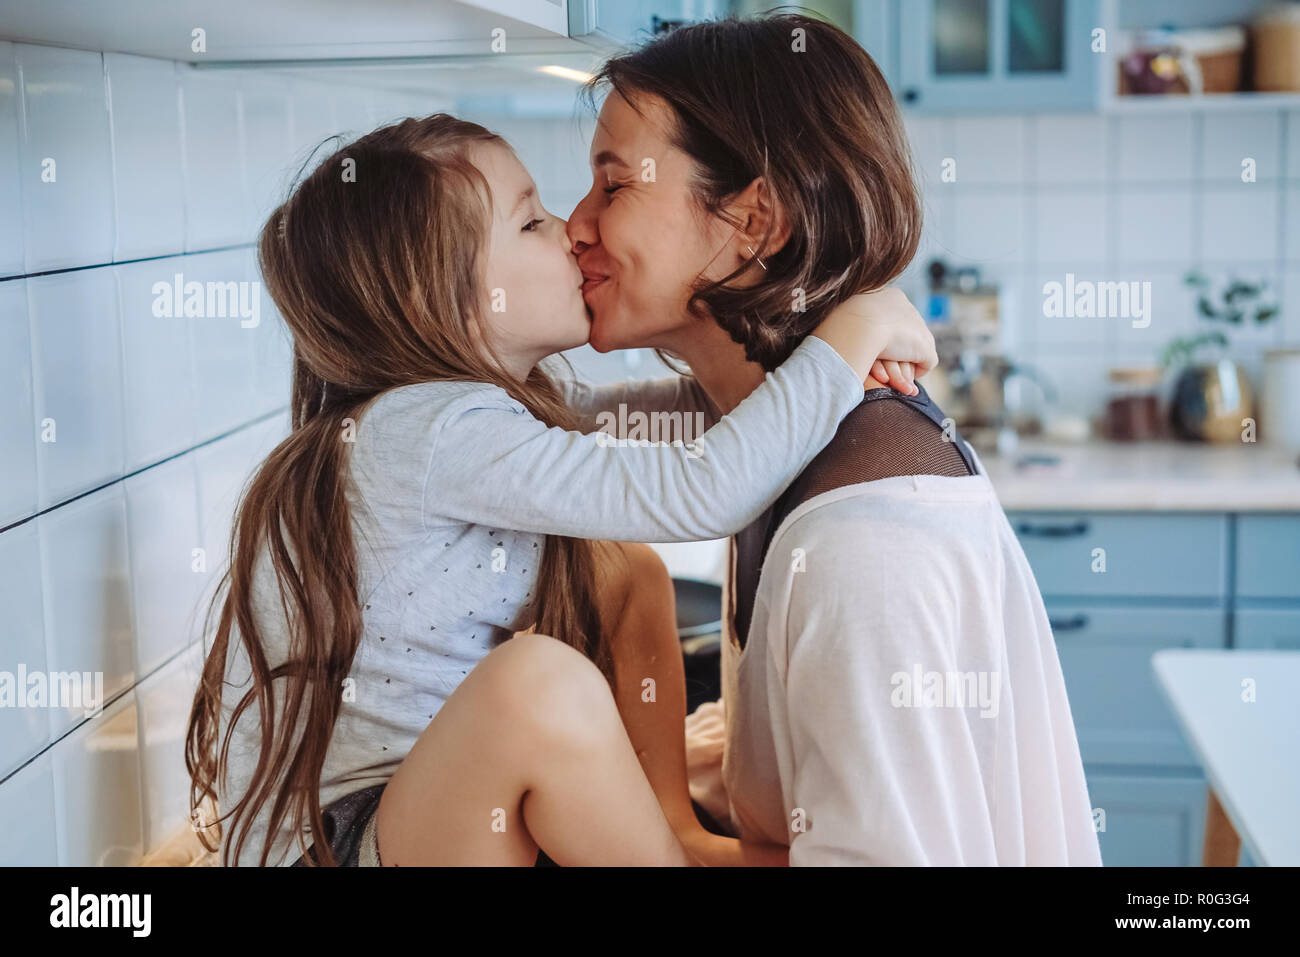 Папа лижет дочке русские. Мама целует дочь. Мама и дочь поцелуй с языком. Мама с дочкой поцелуй. Мама целуется с дочкой.